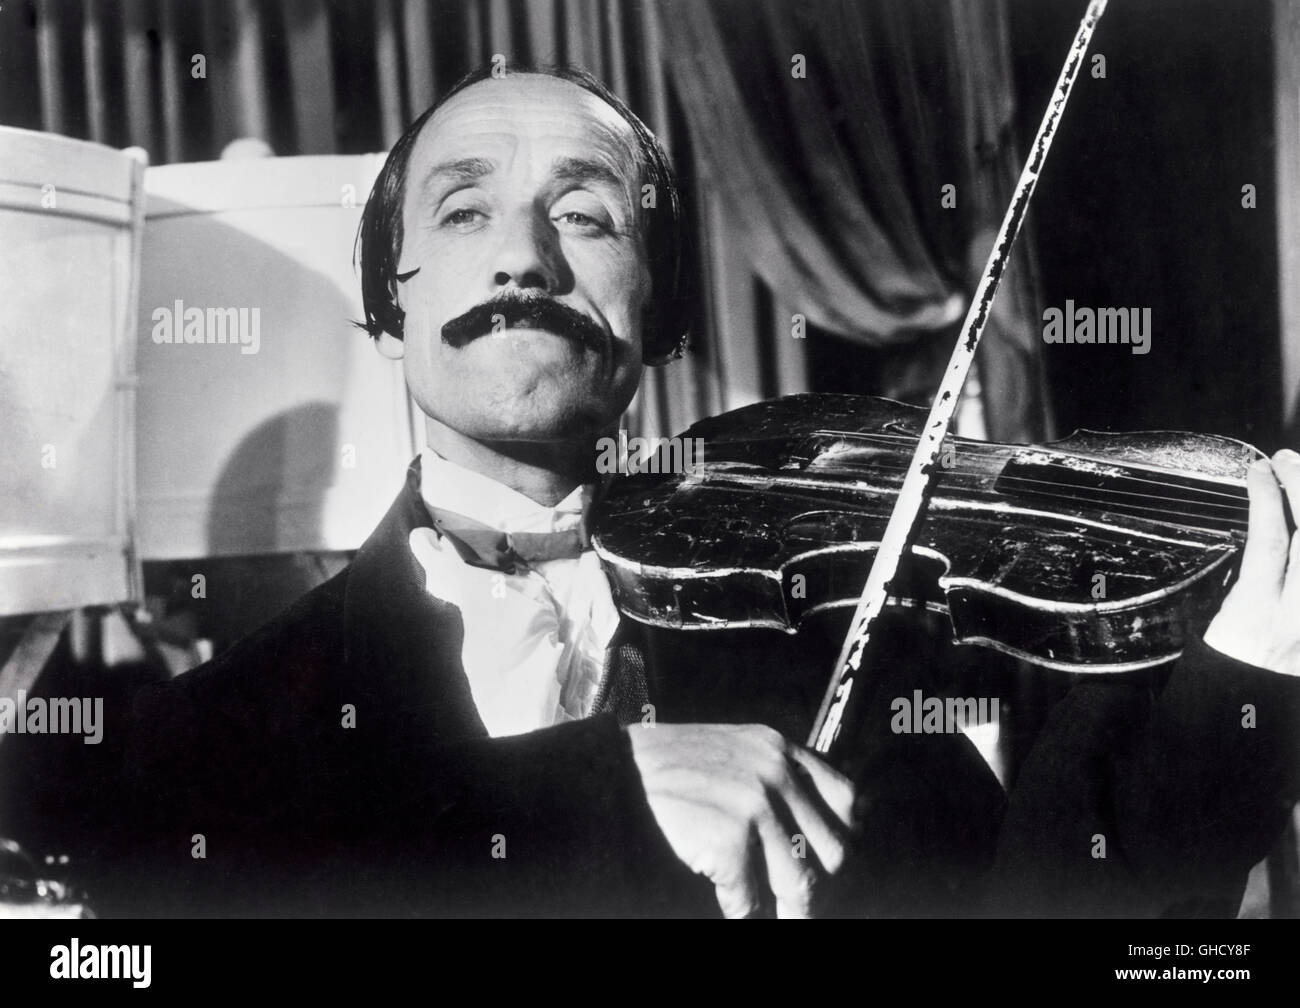 IL MONDO DI NOTTE Italien 1959 Luigi Vanzi violinista in una scena di musica italiana documentario il mondo di notte/mondo di notte. Regie: Luigi Vanzi Foto Stock